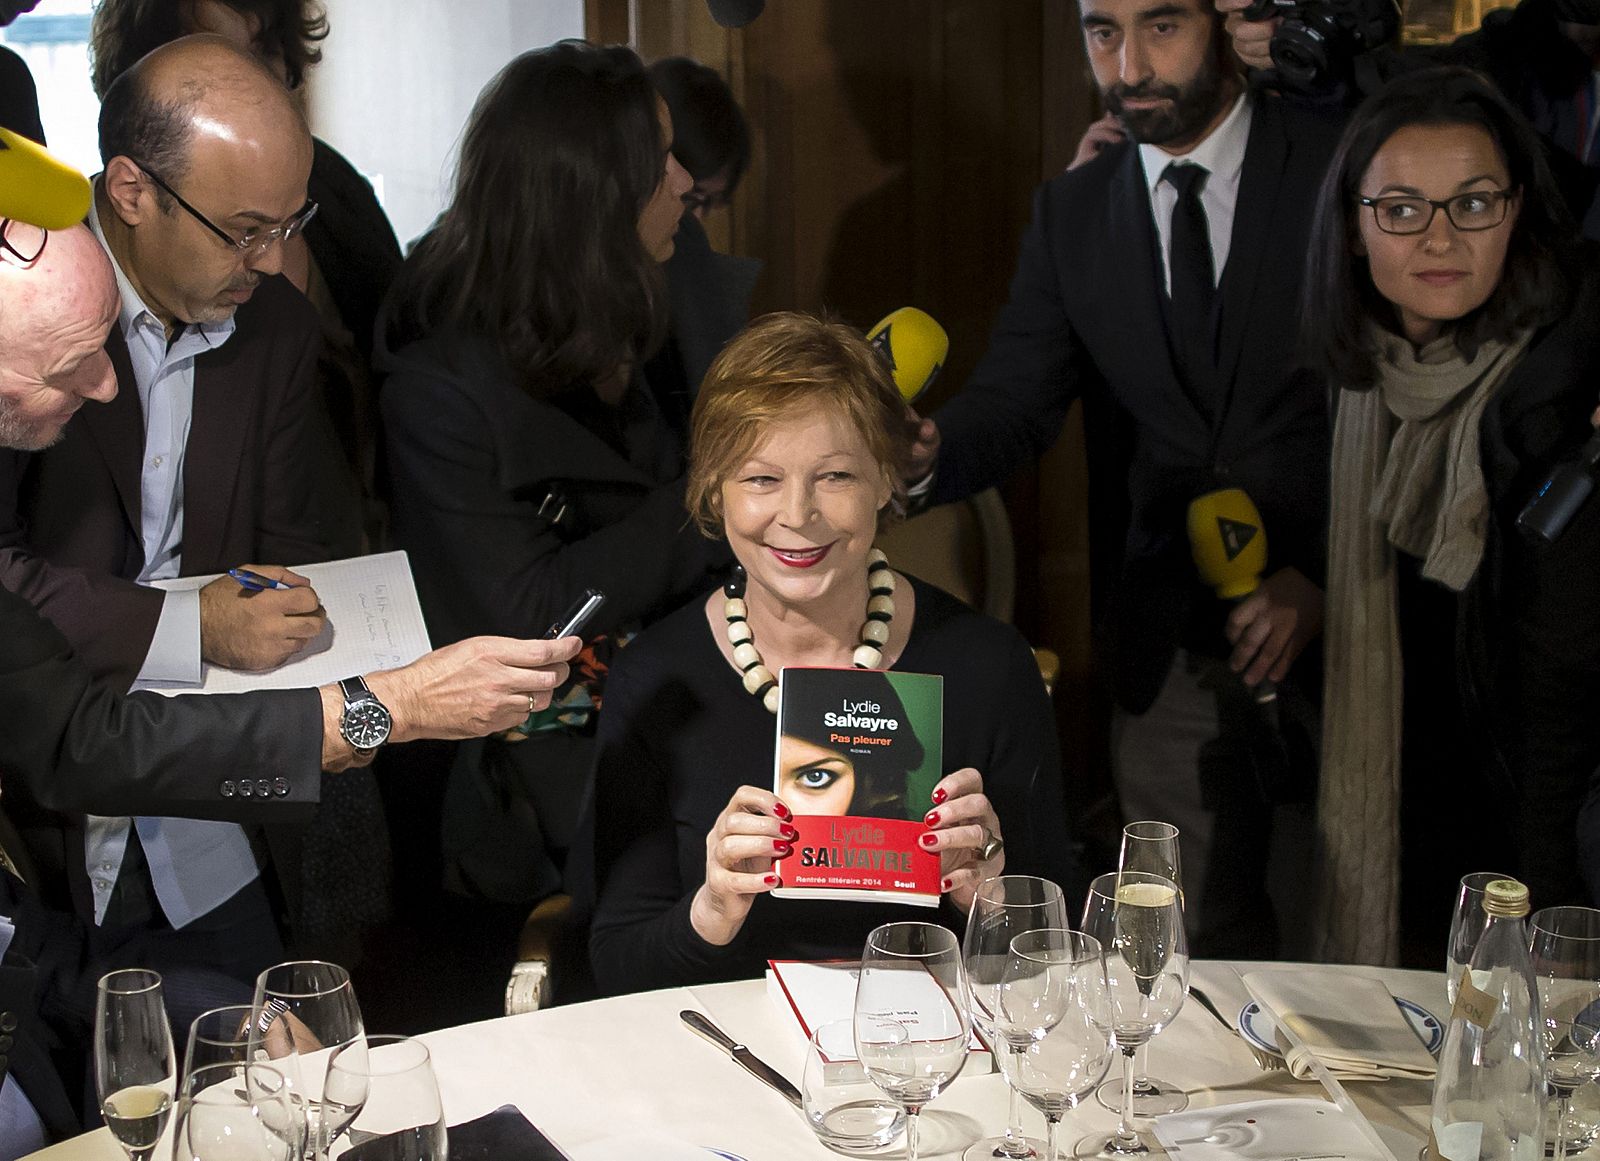 La escritora francesa de origen español Lydie Salvayre tras ganar el premio Goncourt